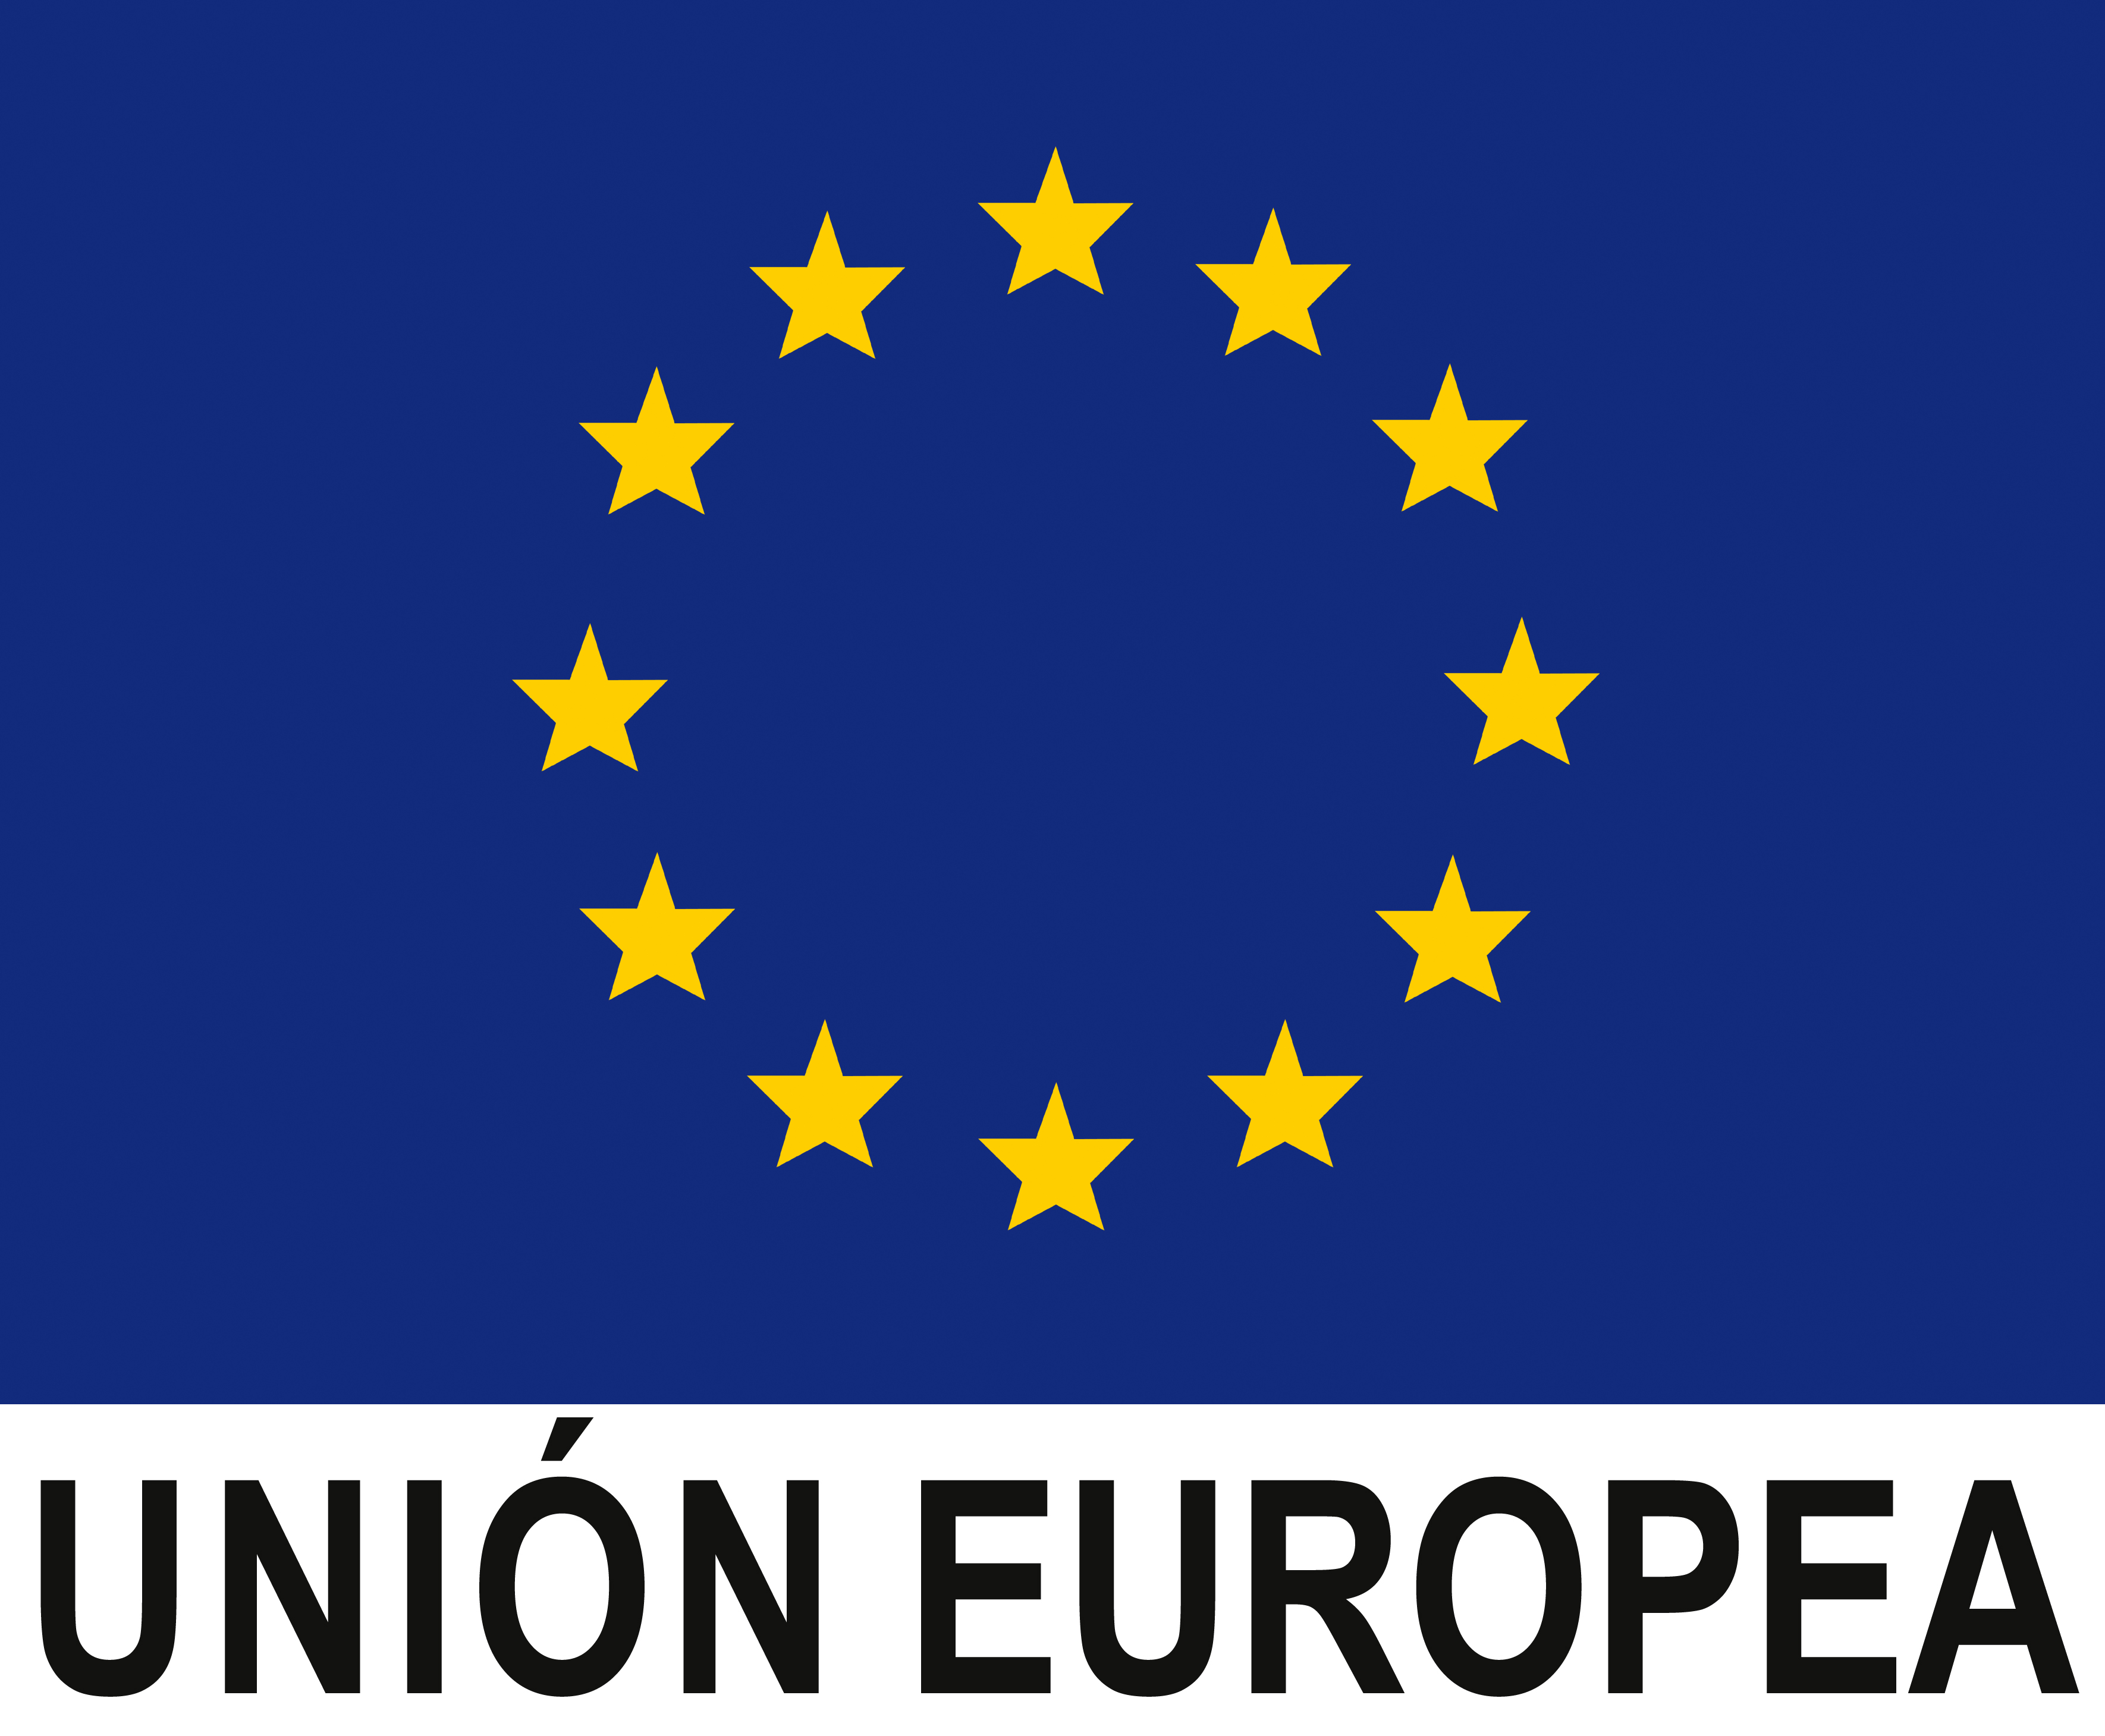 Logo Európskej únie